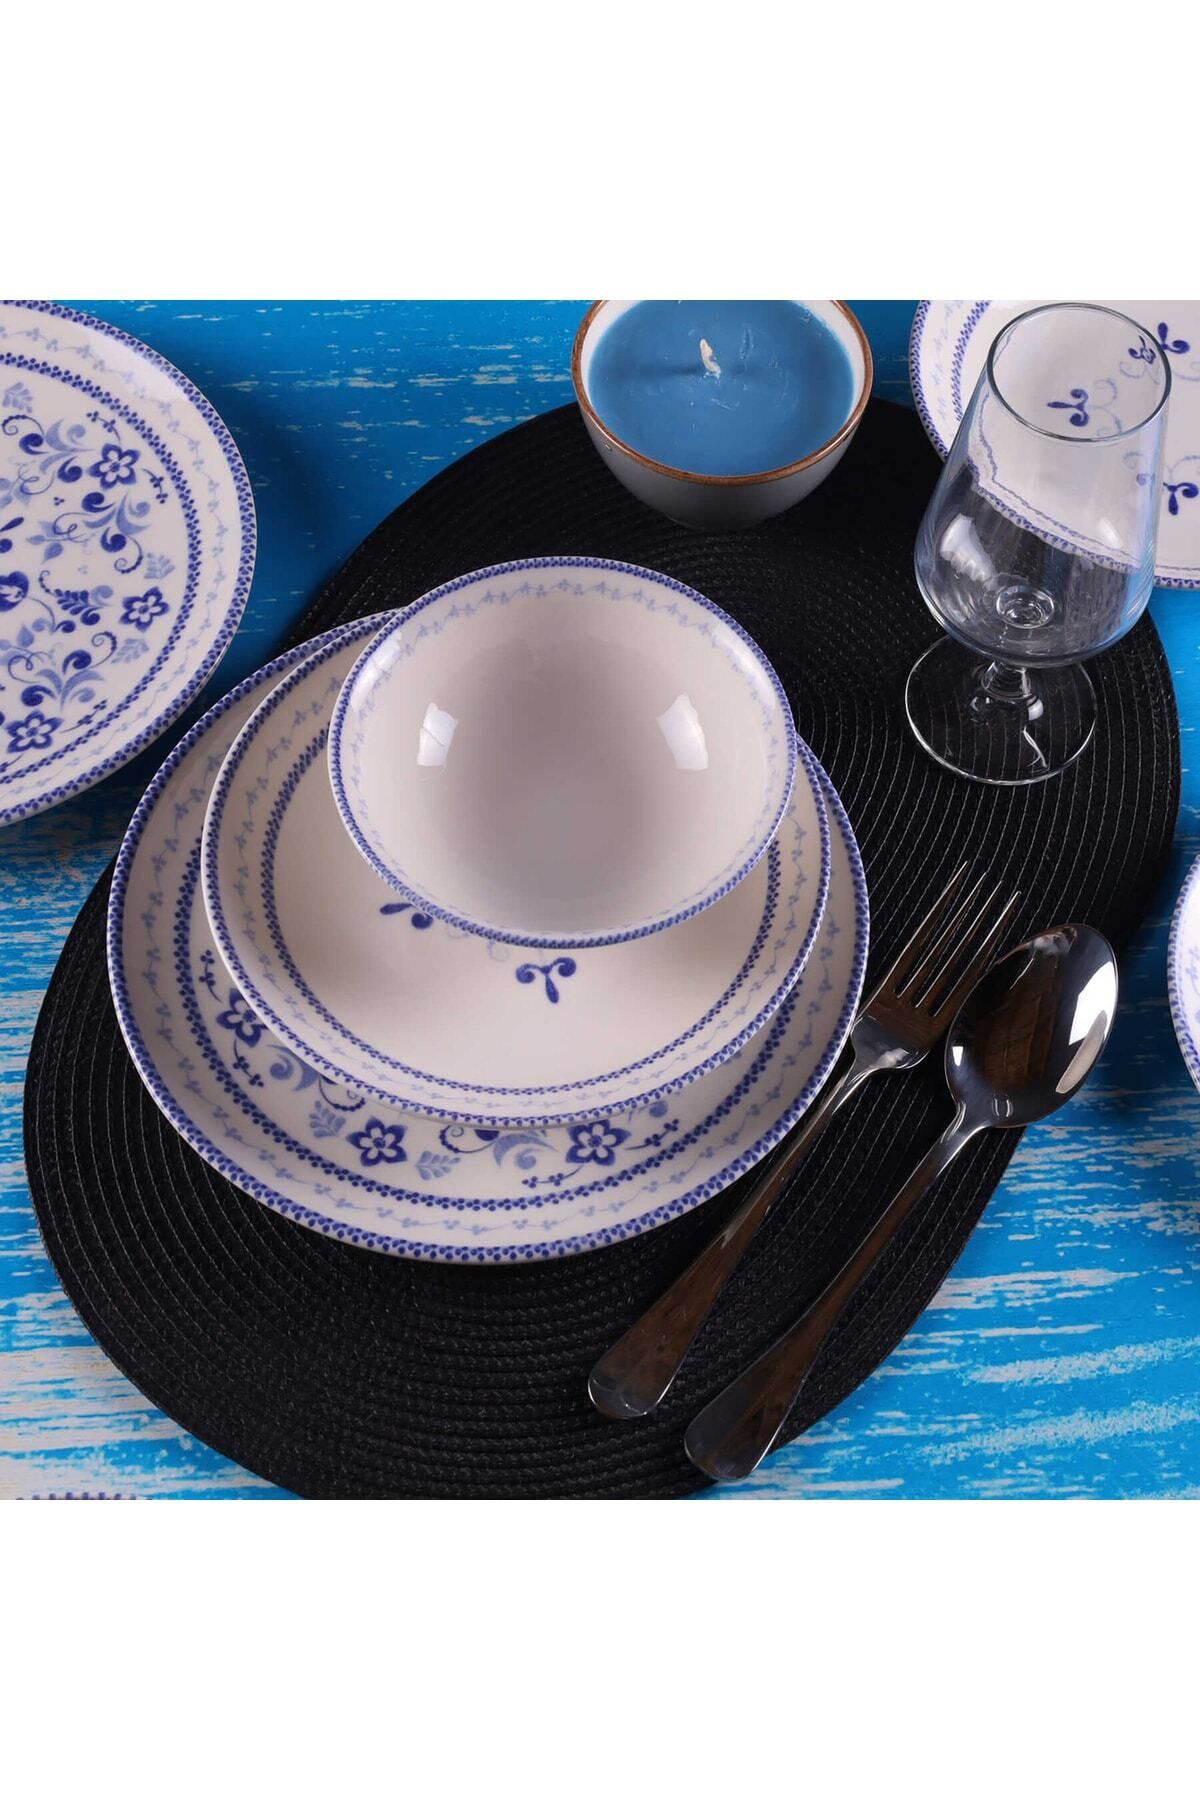 Tulü Porselen Blue Blanc 24 Parça 6 Kişilik Günlük Yemek Takımı Mavi Krem Klasik Db0775